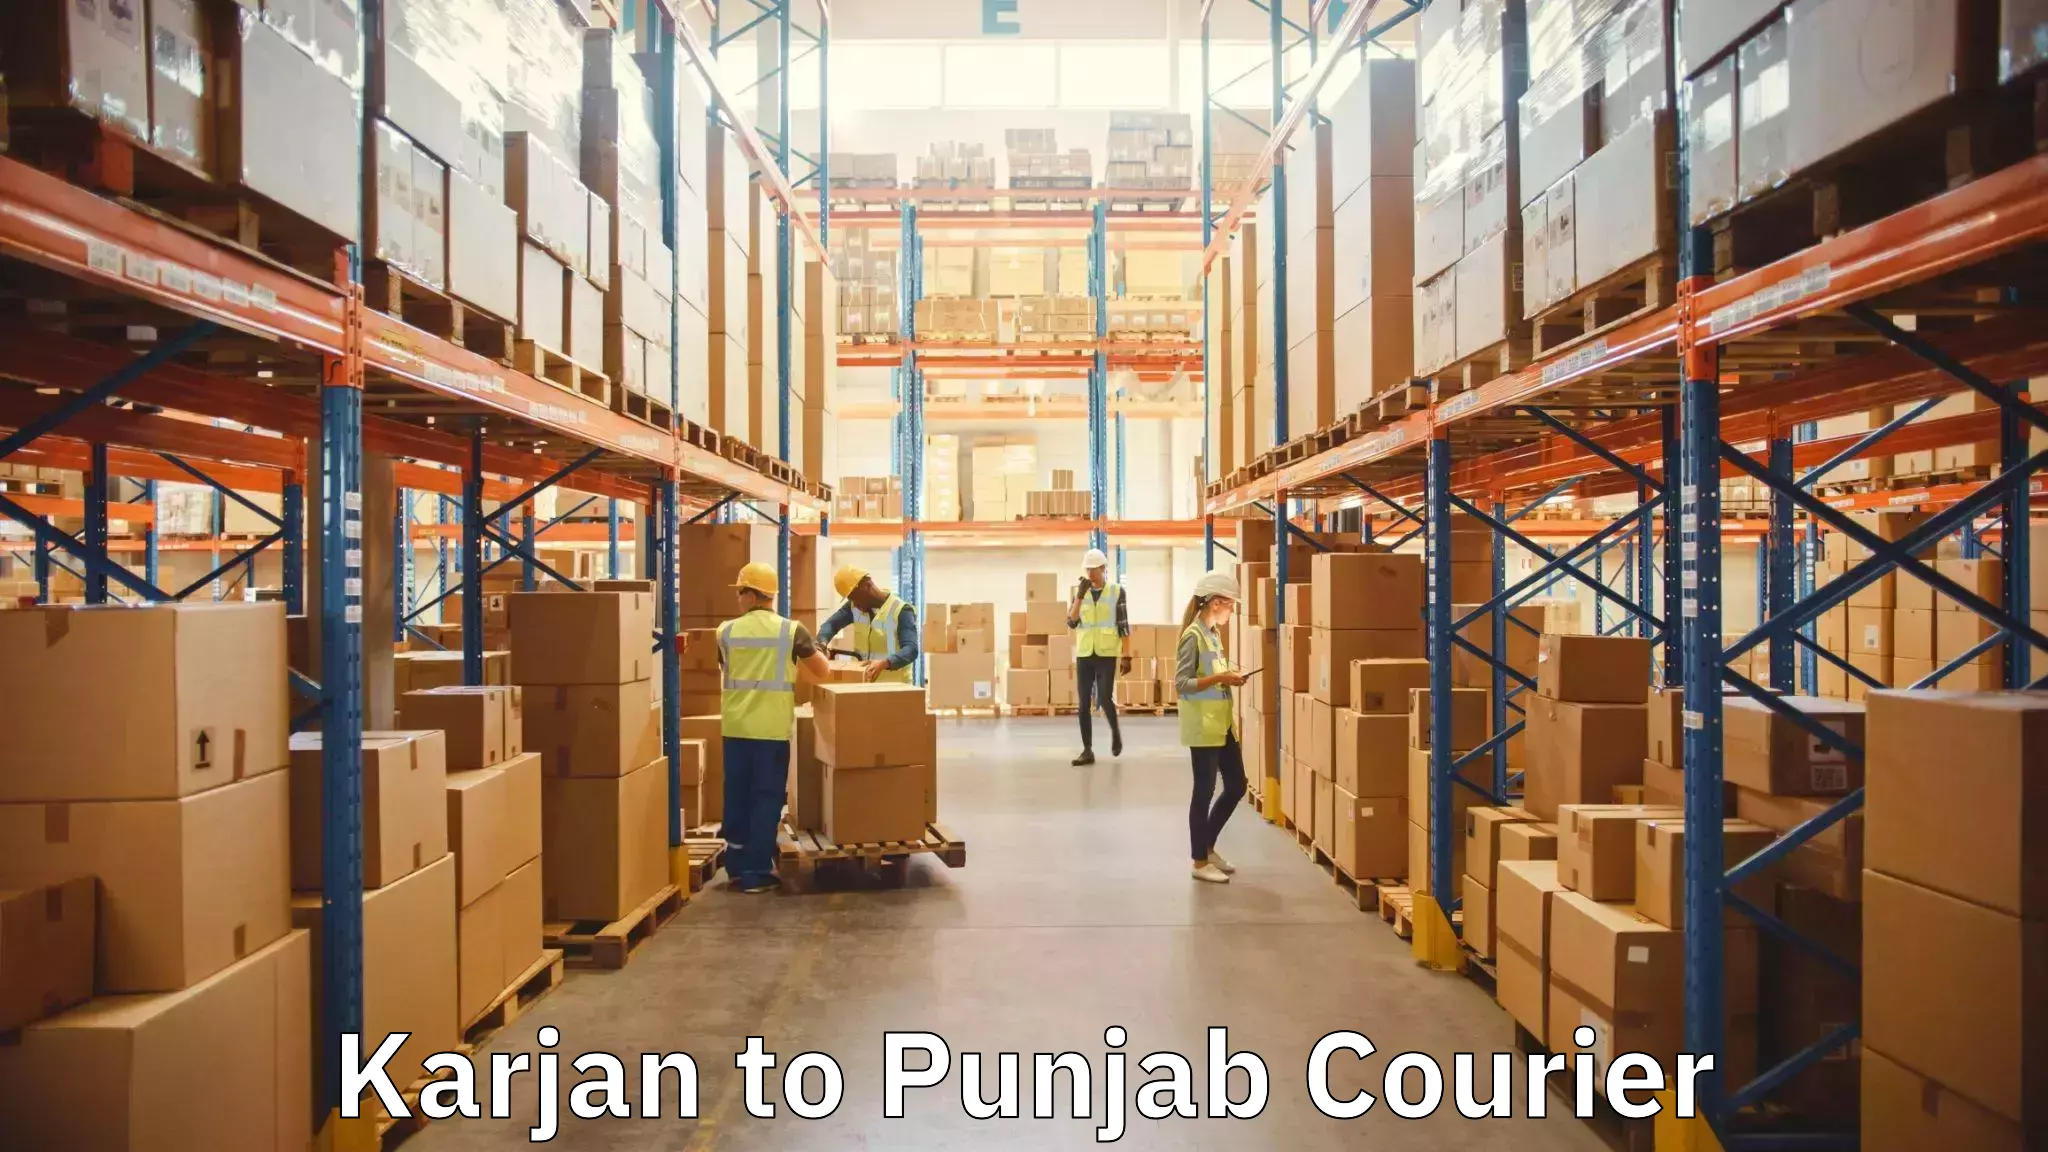 High-quality moving services Karjan to Punjab